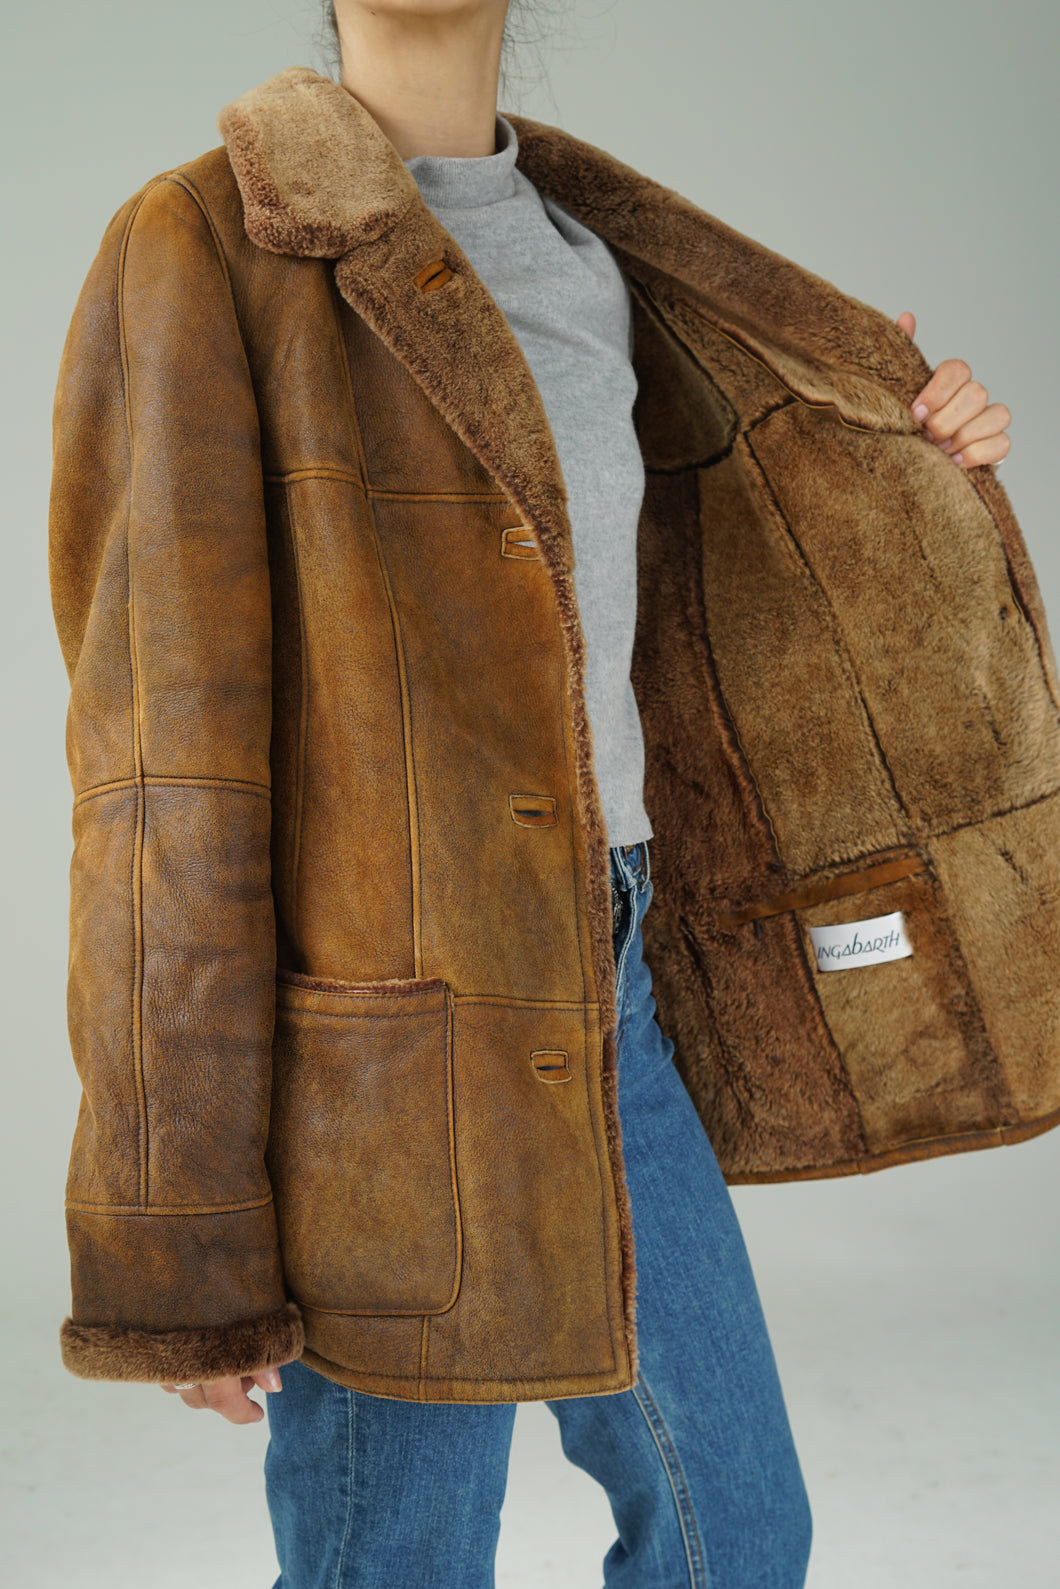 Vintage sheepskin jacket made in Germany Inga Barth size medium